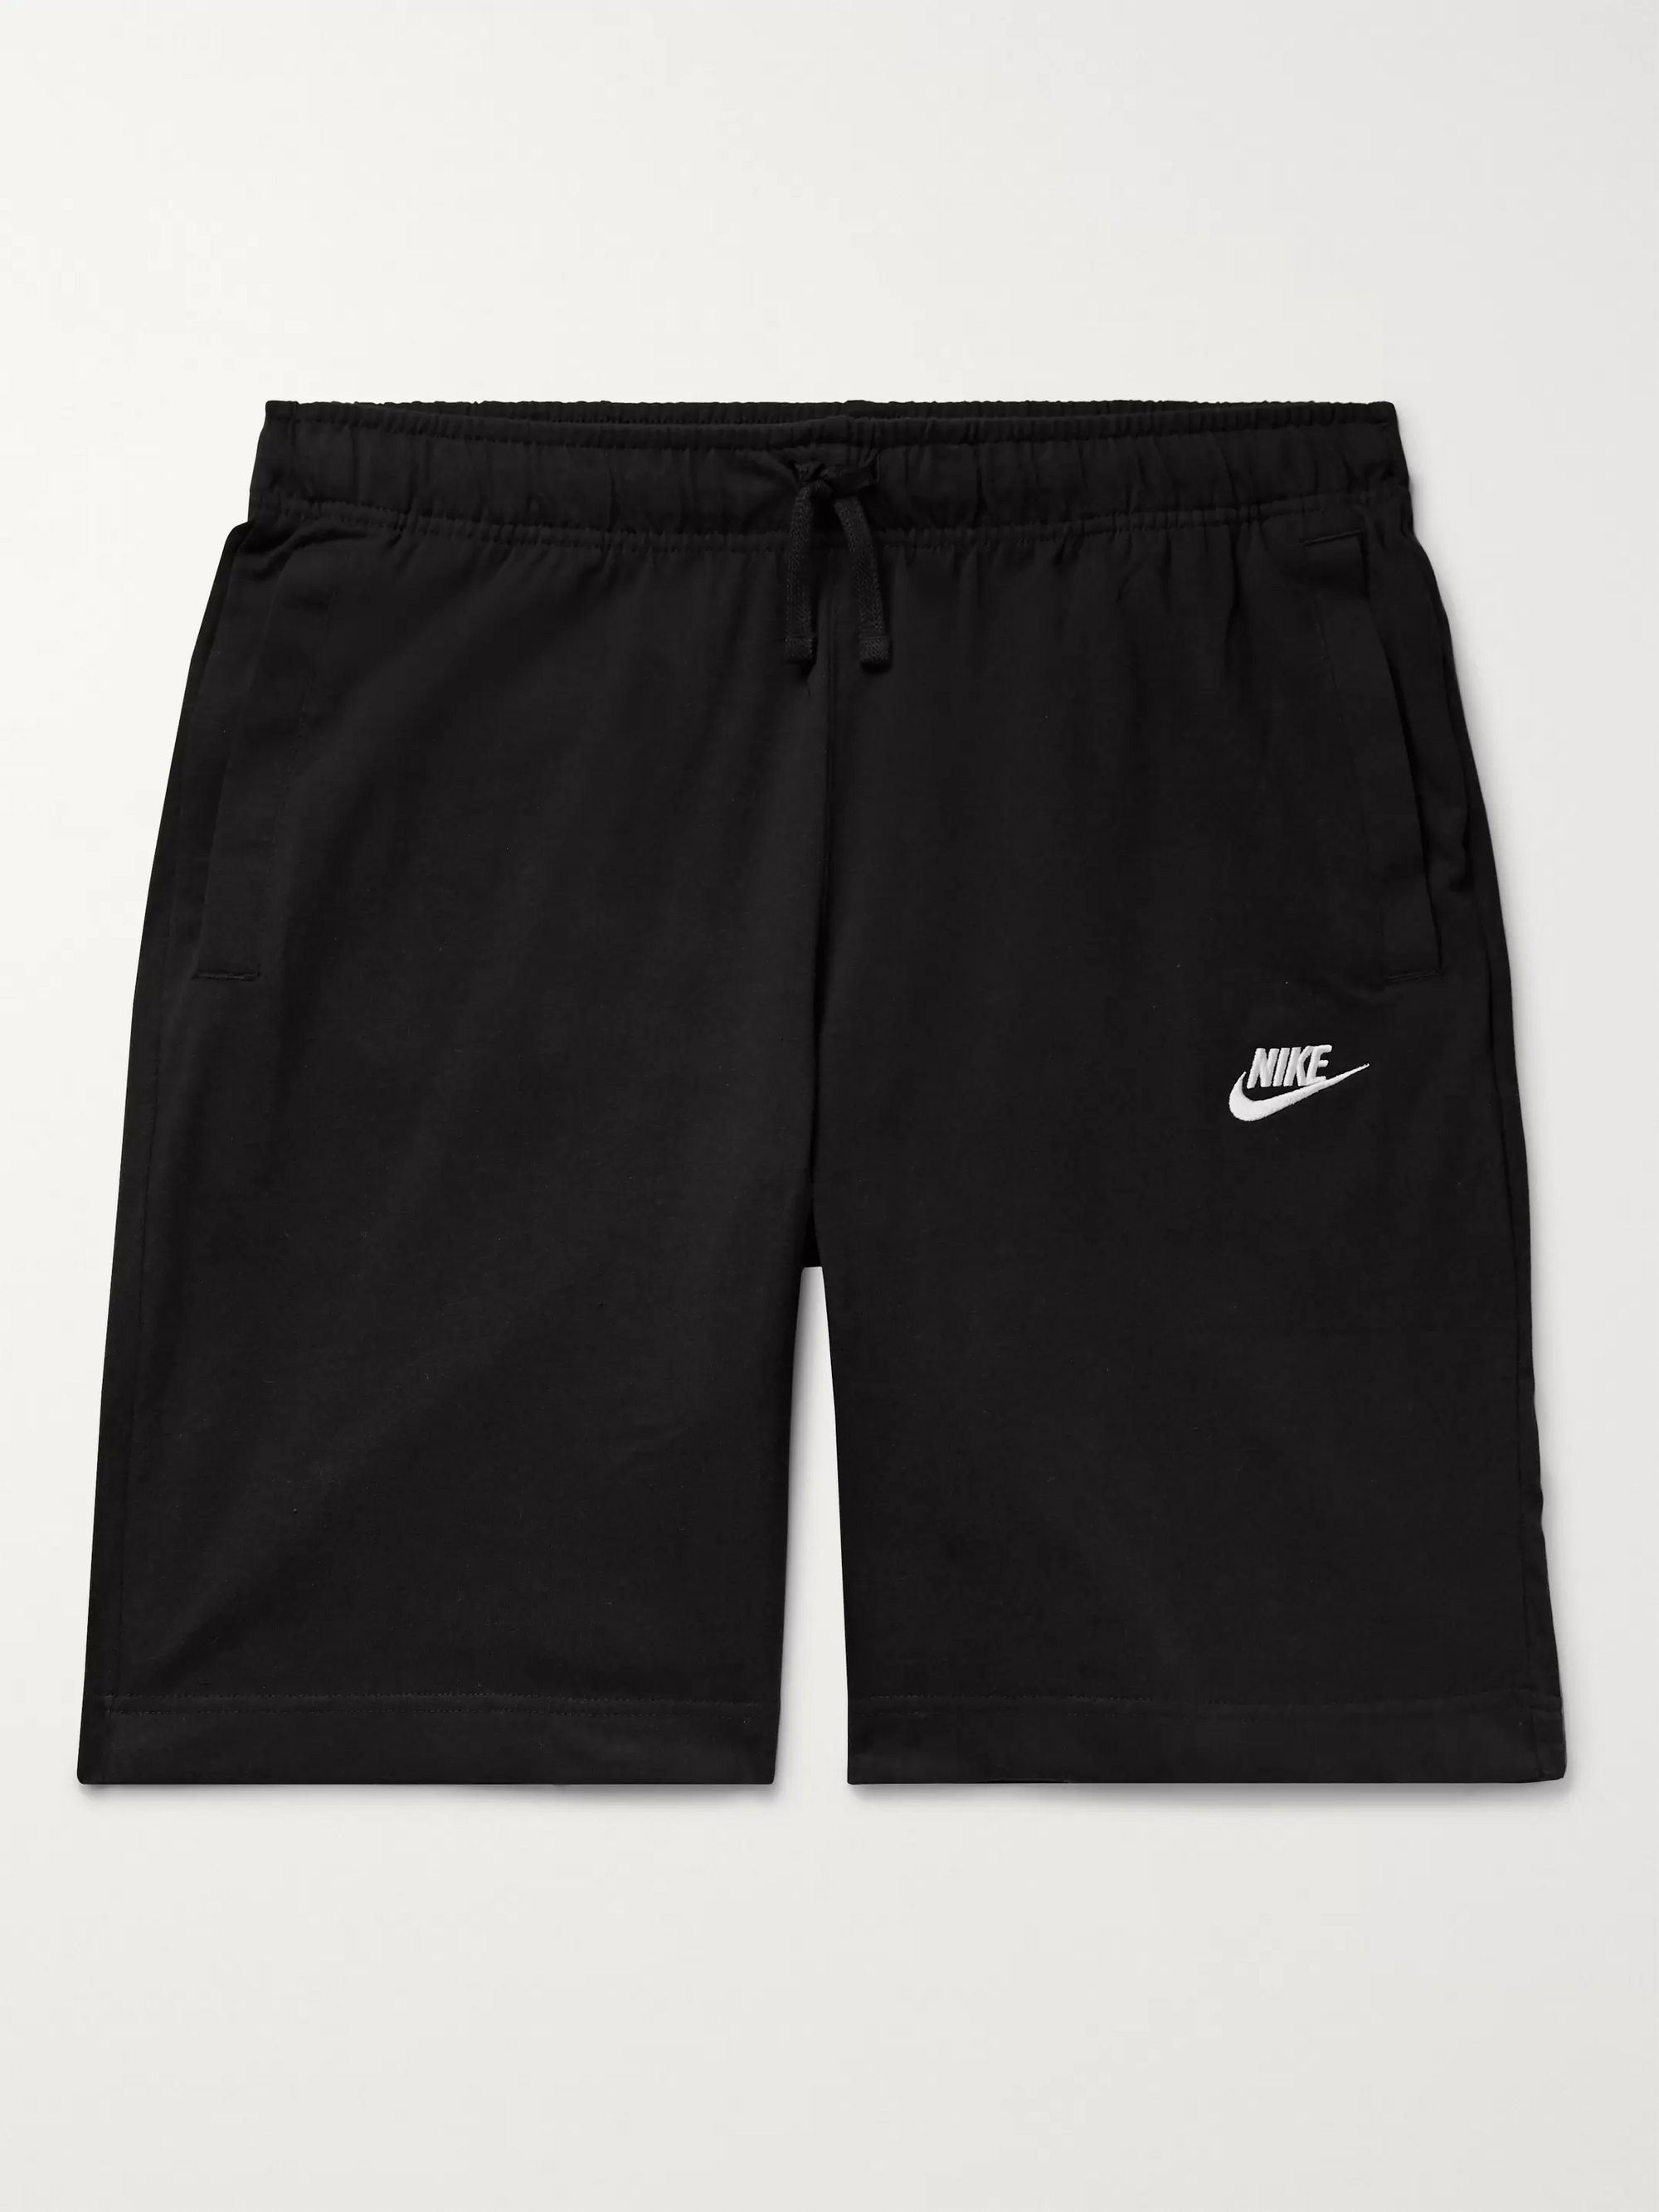 black cotton nike shorts 